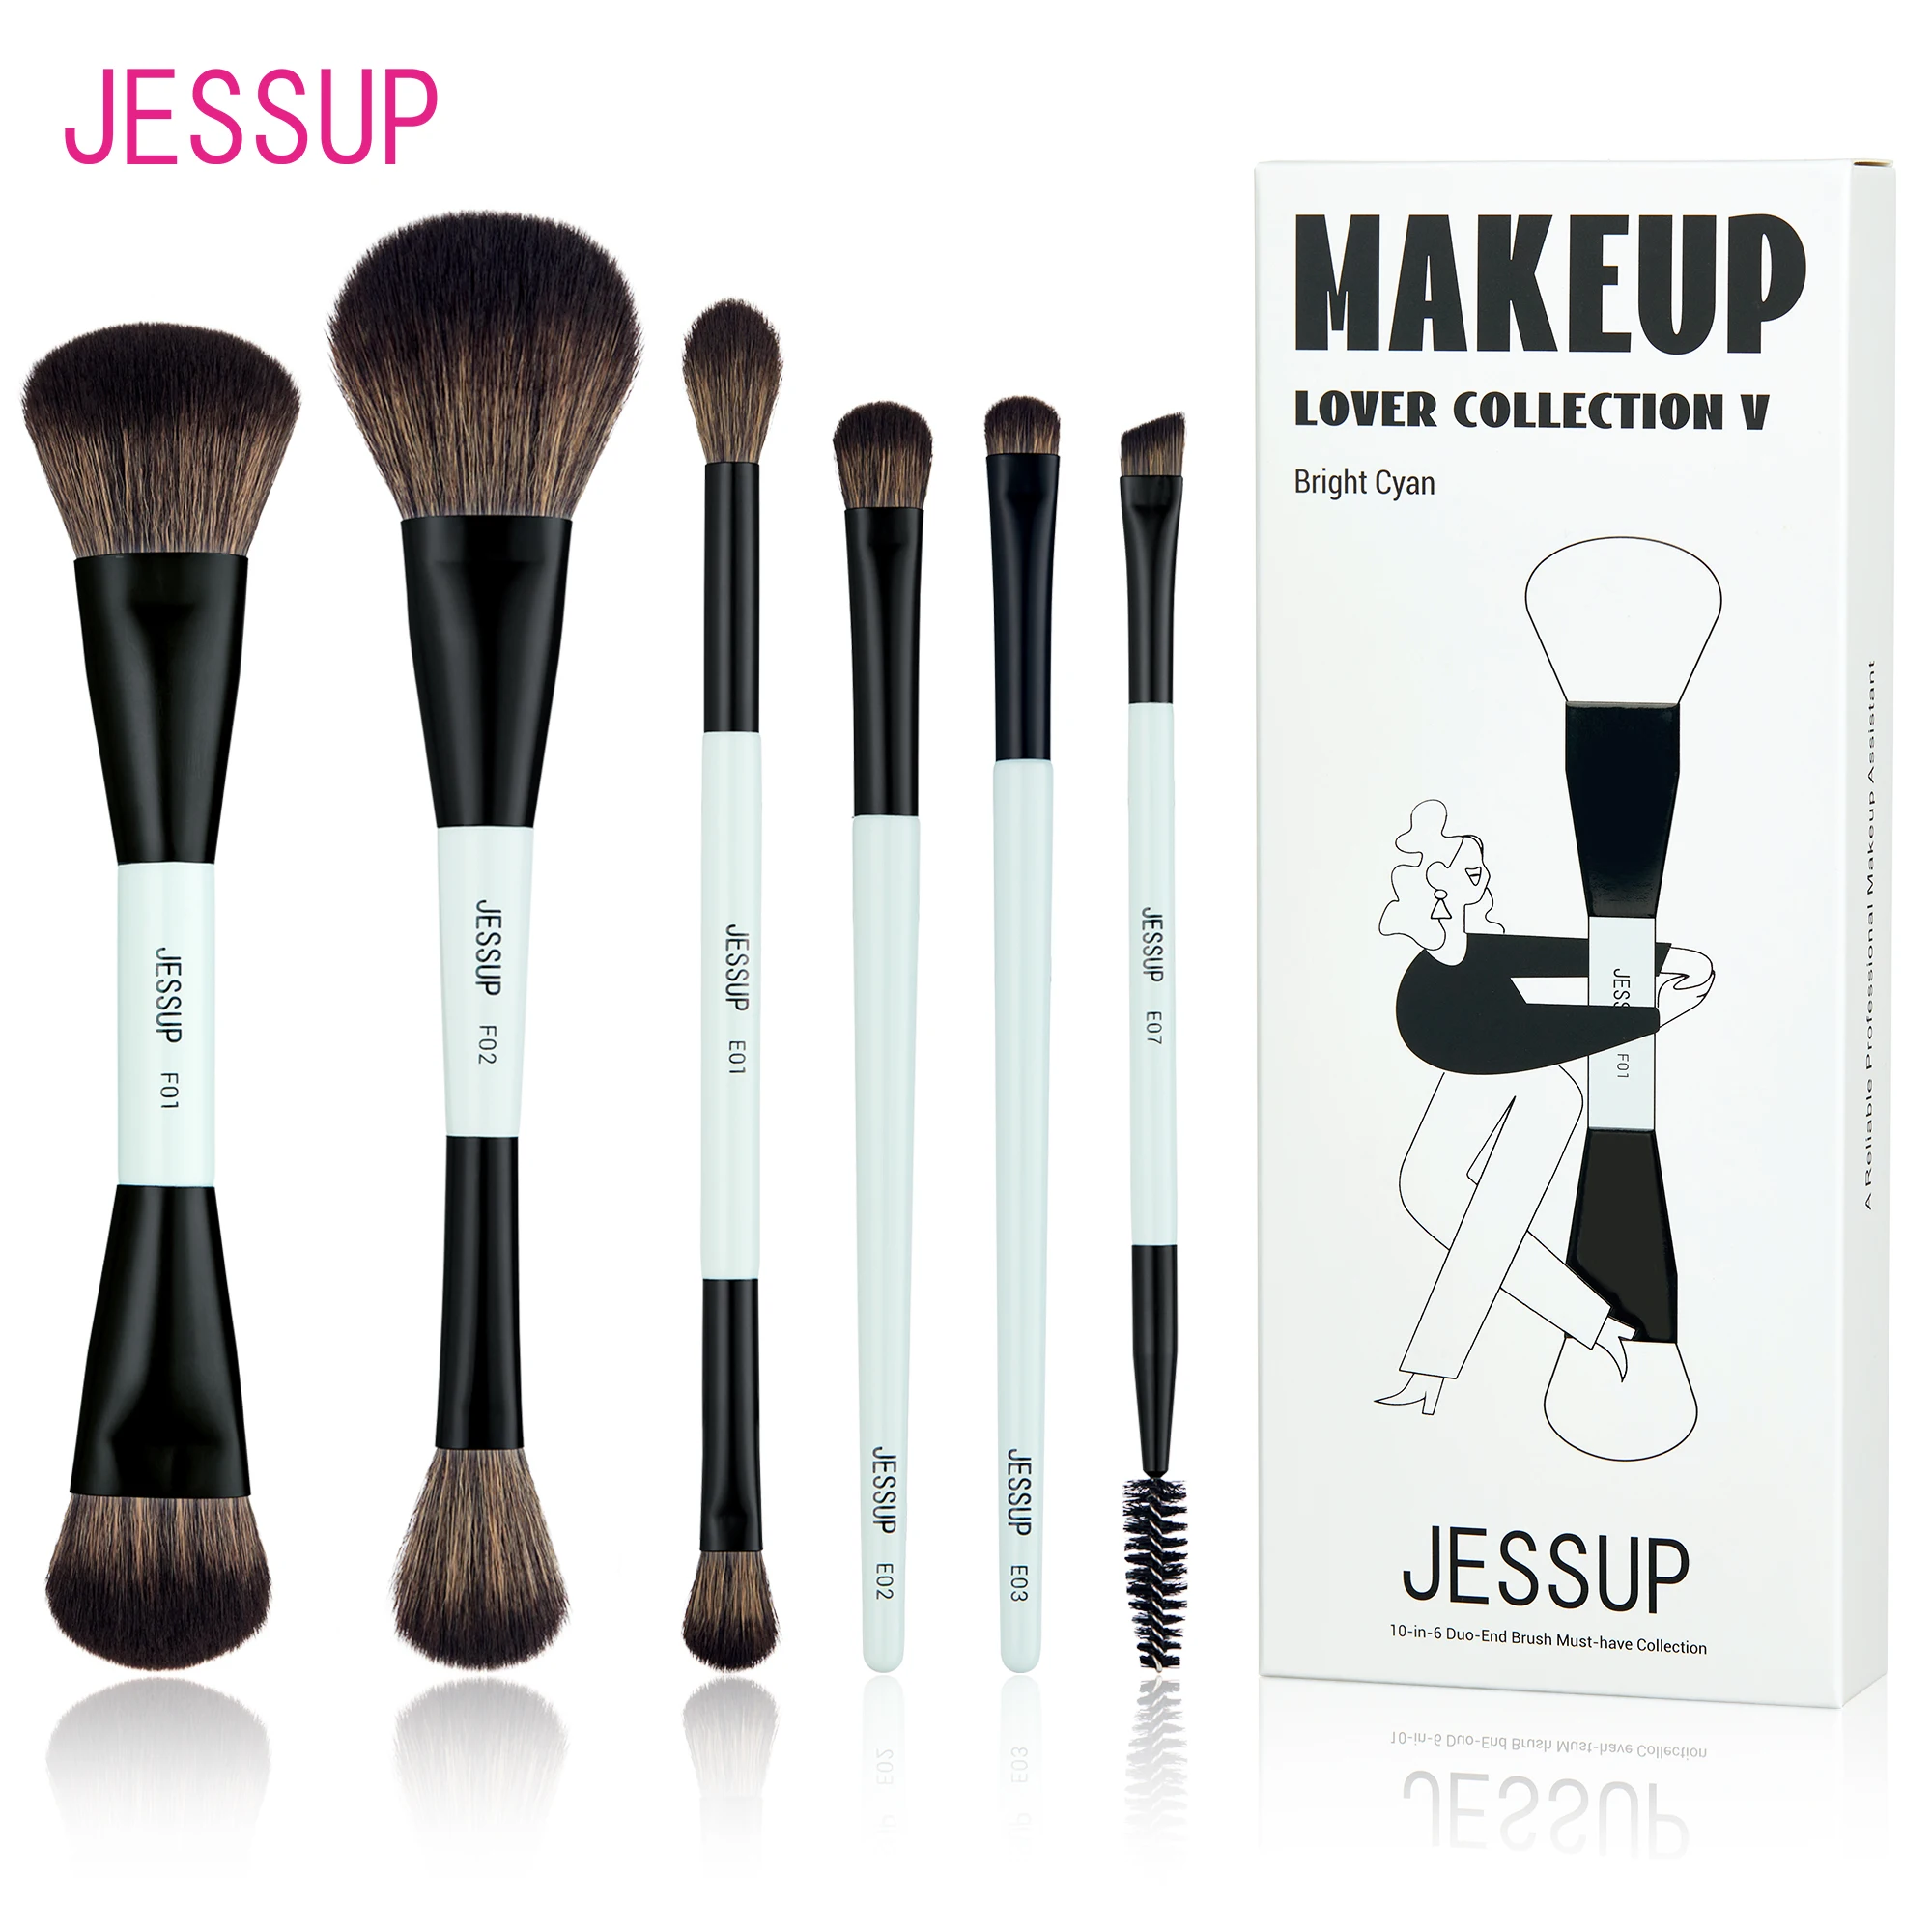 

Набор двусторонних кистей для макияжа Jessup T501, кисточки для тона, контура, румян, растушевки теней для бровей, из волокна, яркие, голубые